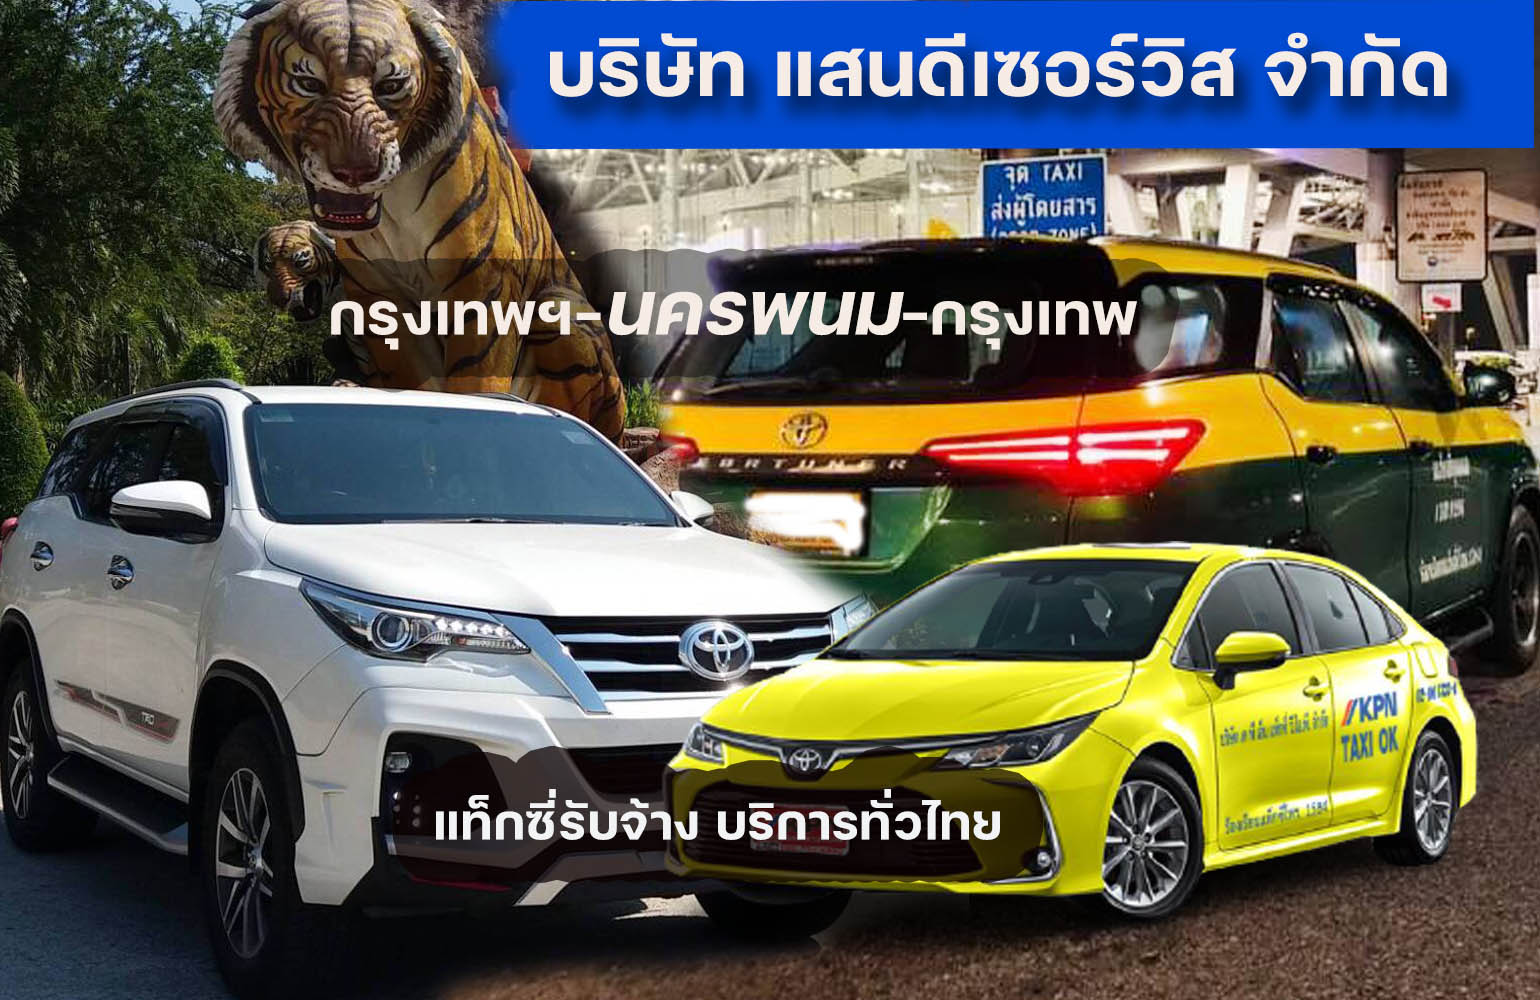 แท็กซี่ไปนครพนม เหมาแท็กซี่ไปนครพนม